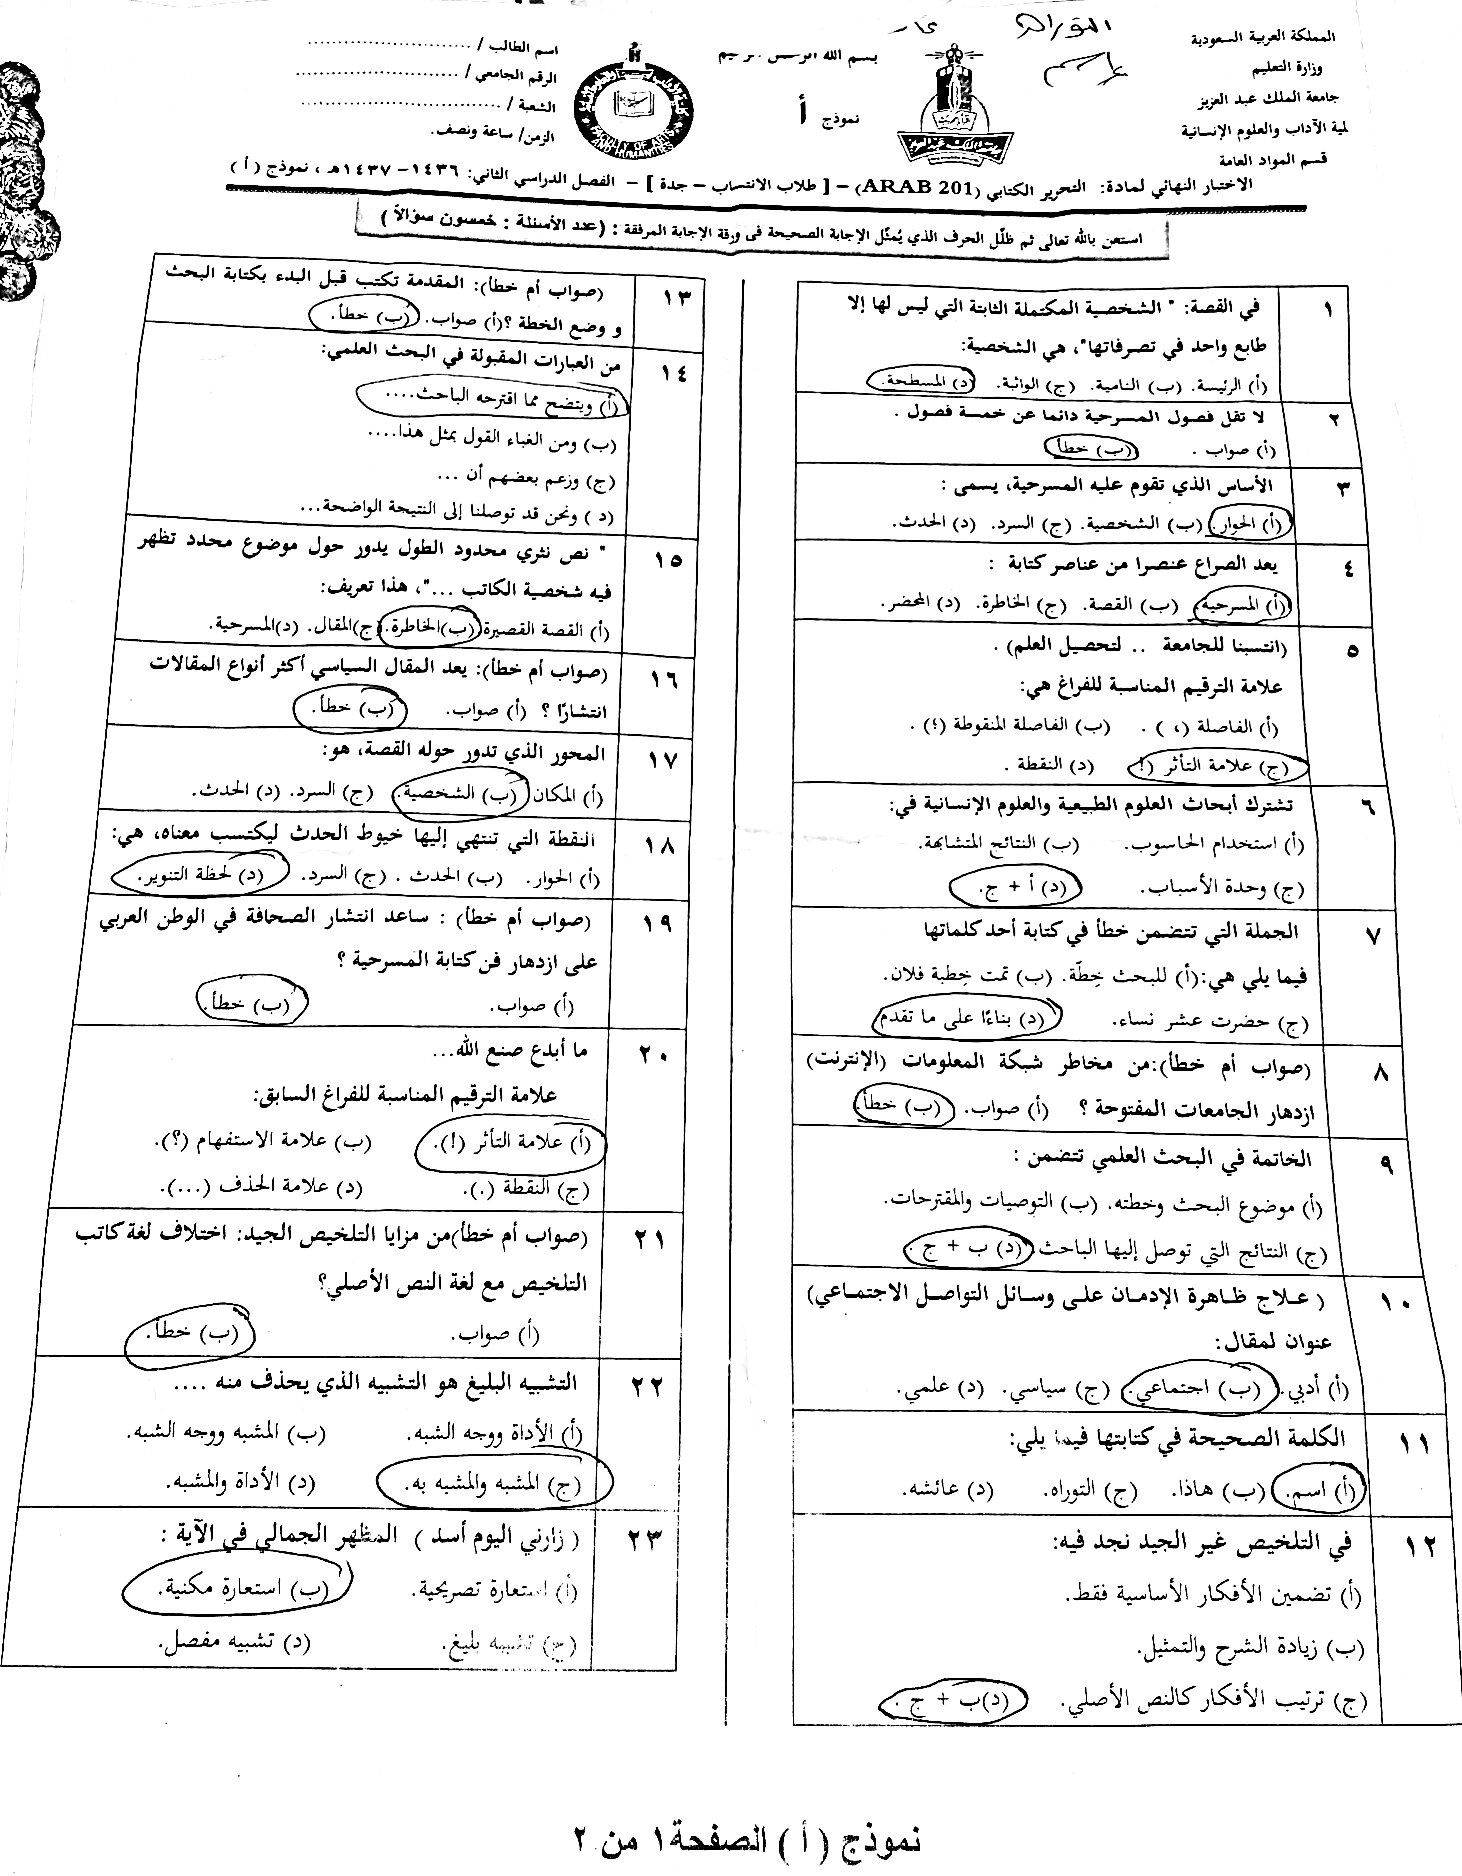 اختبار التحرير الكتابي arab 201 الفصل الثاني 1437هـ نموذج أ